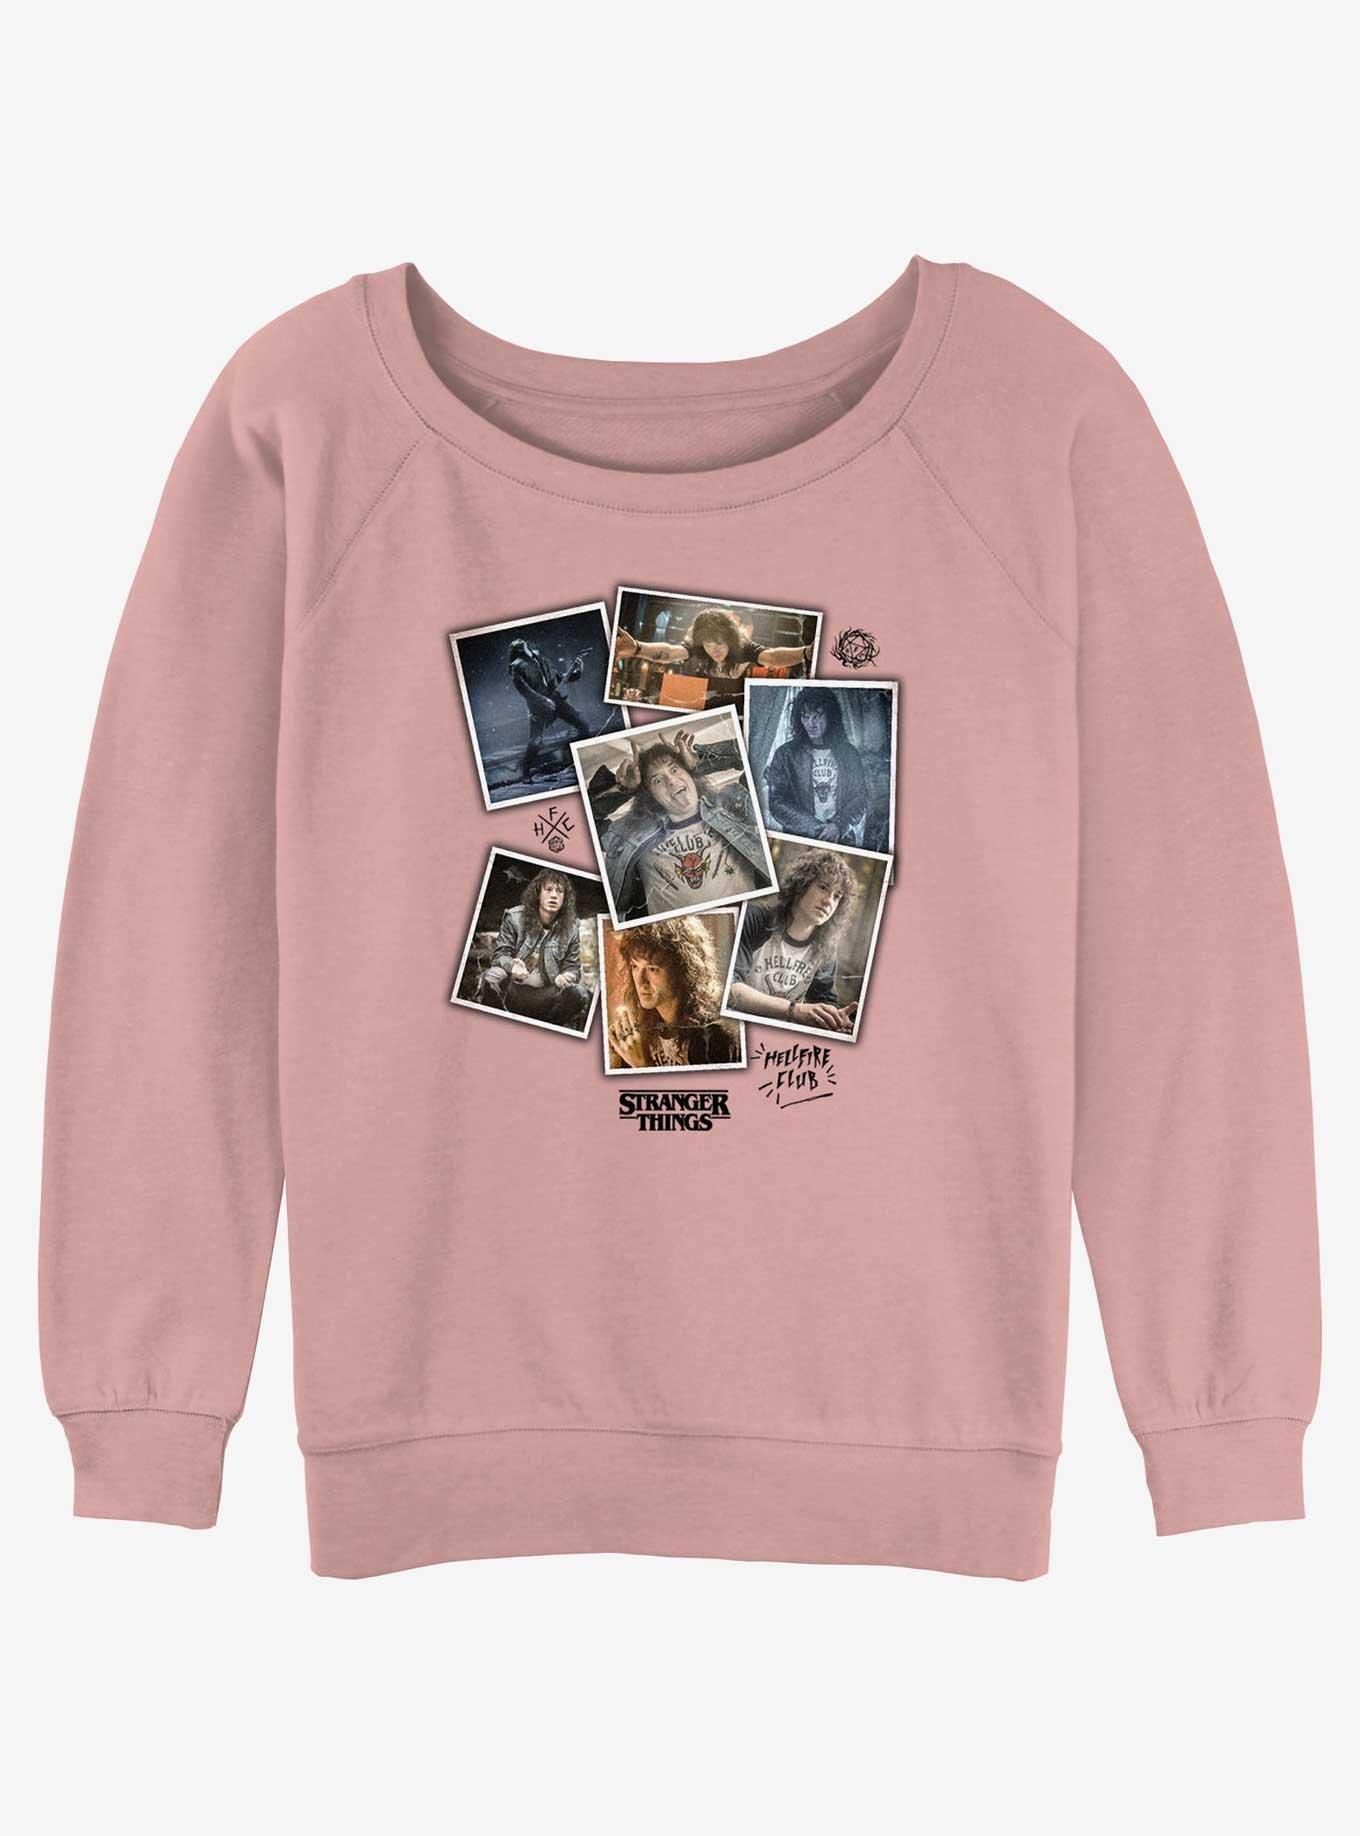 Stranger Things Eddie Munson Collage Girls Slouchy Sweatshirt